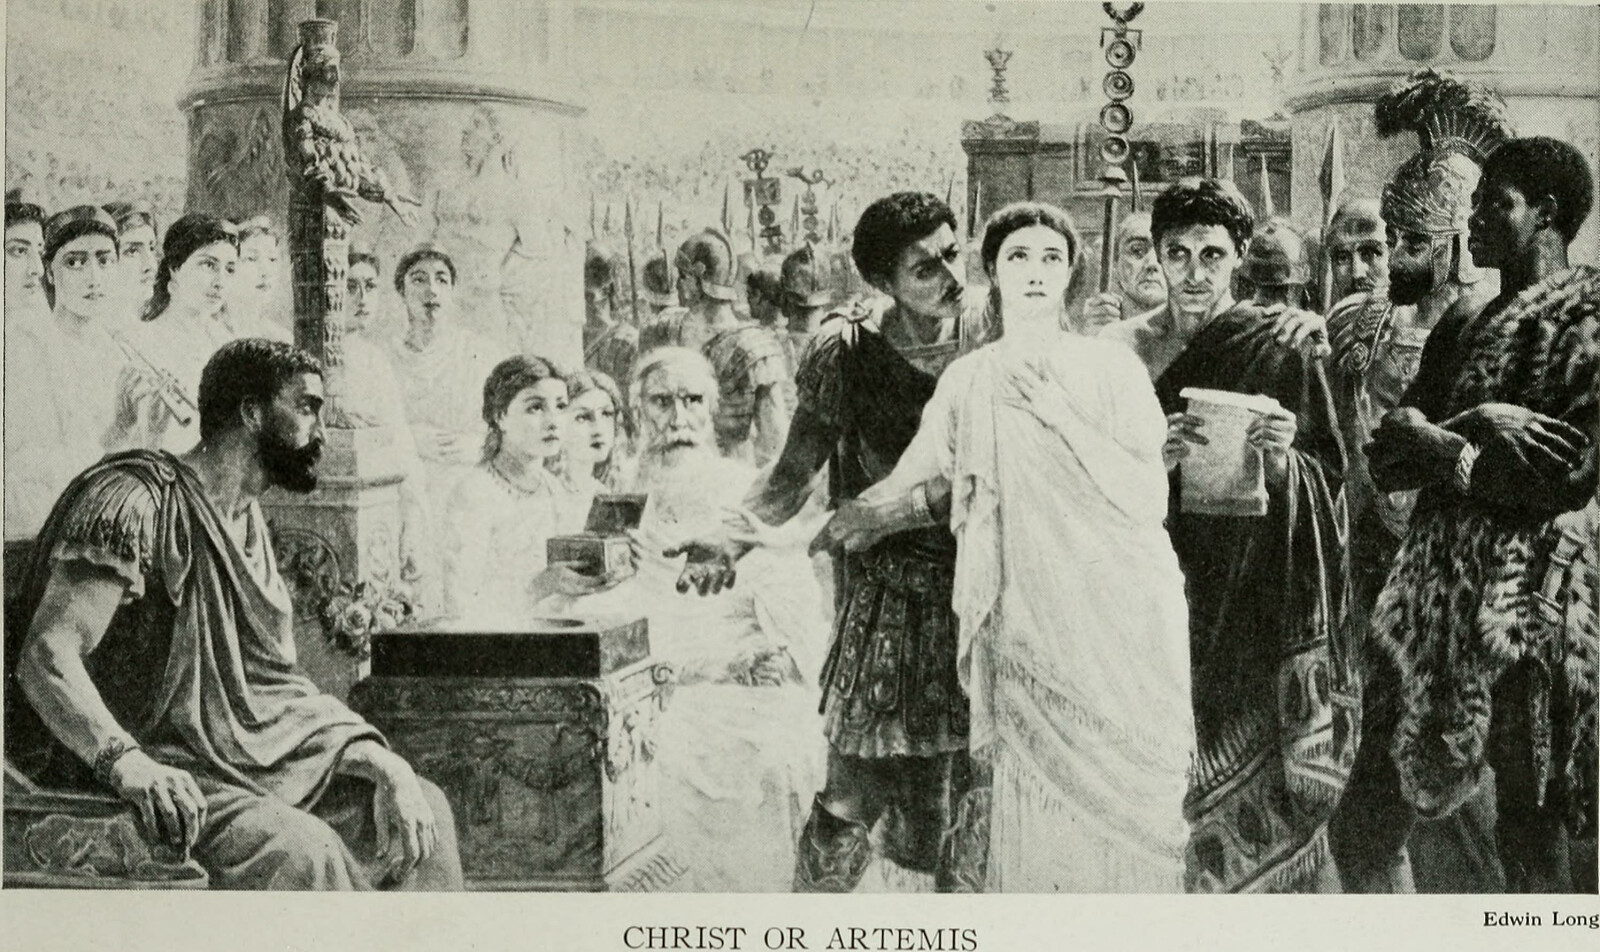 Chrystus czy Artemida - czasy wczesnego chrześcijaństwa - Grant, Frederick C. (Frederick Clifton), 1891-1974, No restrictions, via Wikimedia Commons